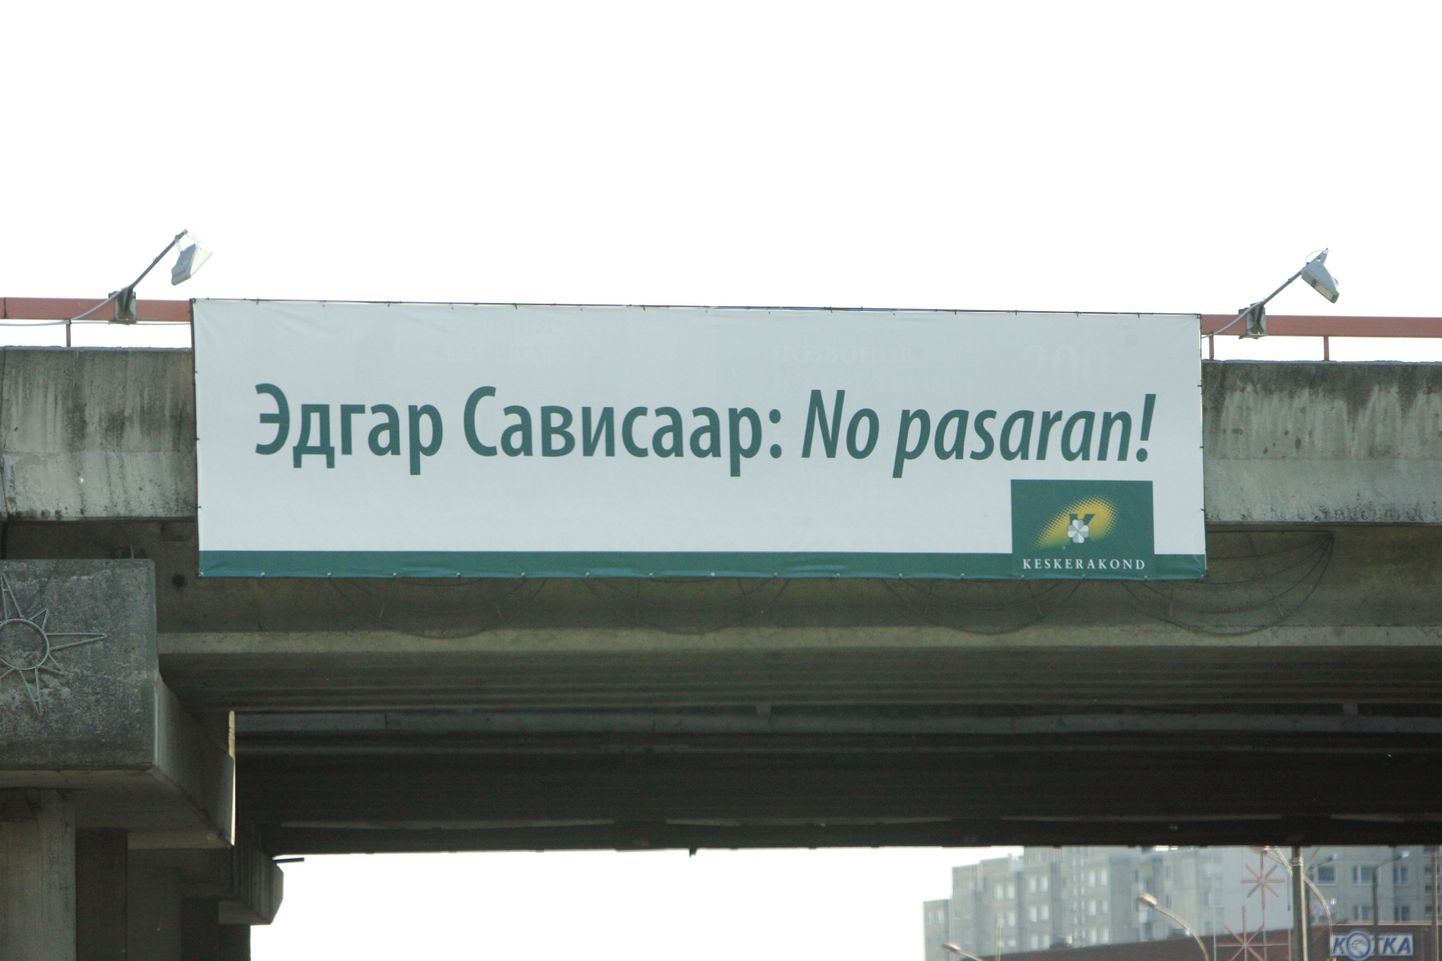 Уличная реклама в Таллинне перед выборами в органы местного самоуправления.